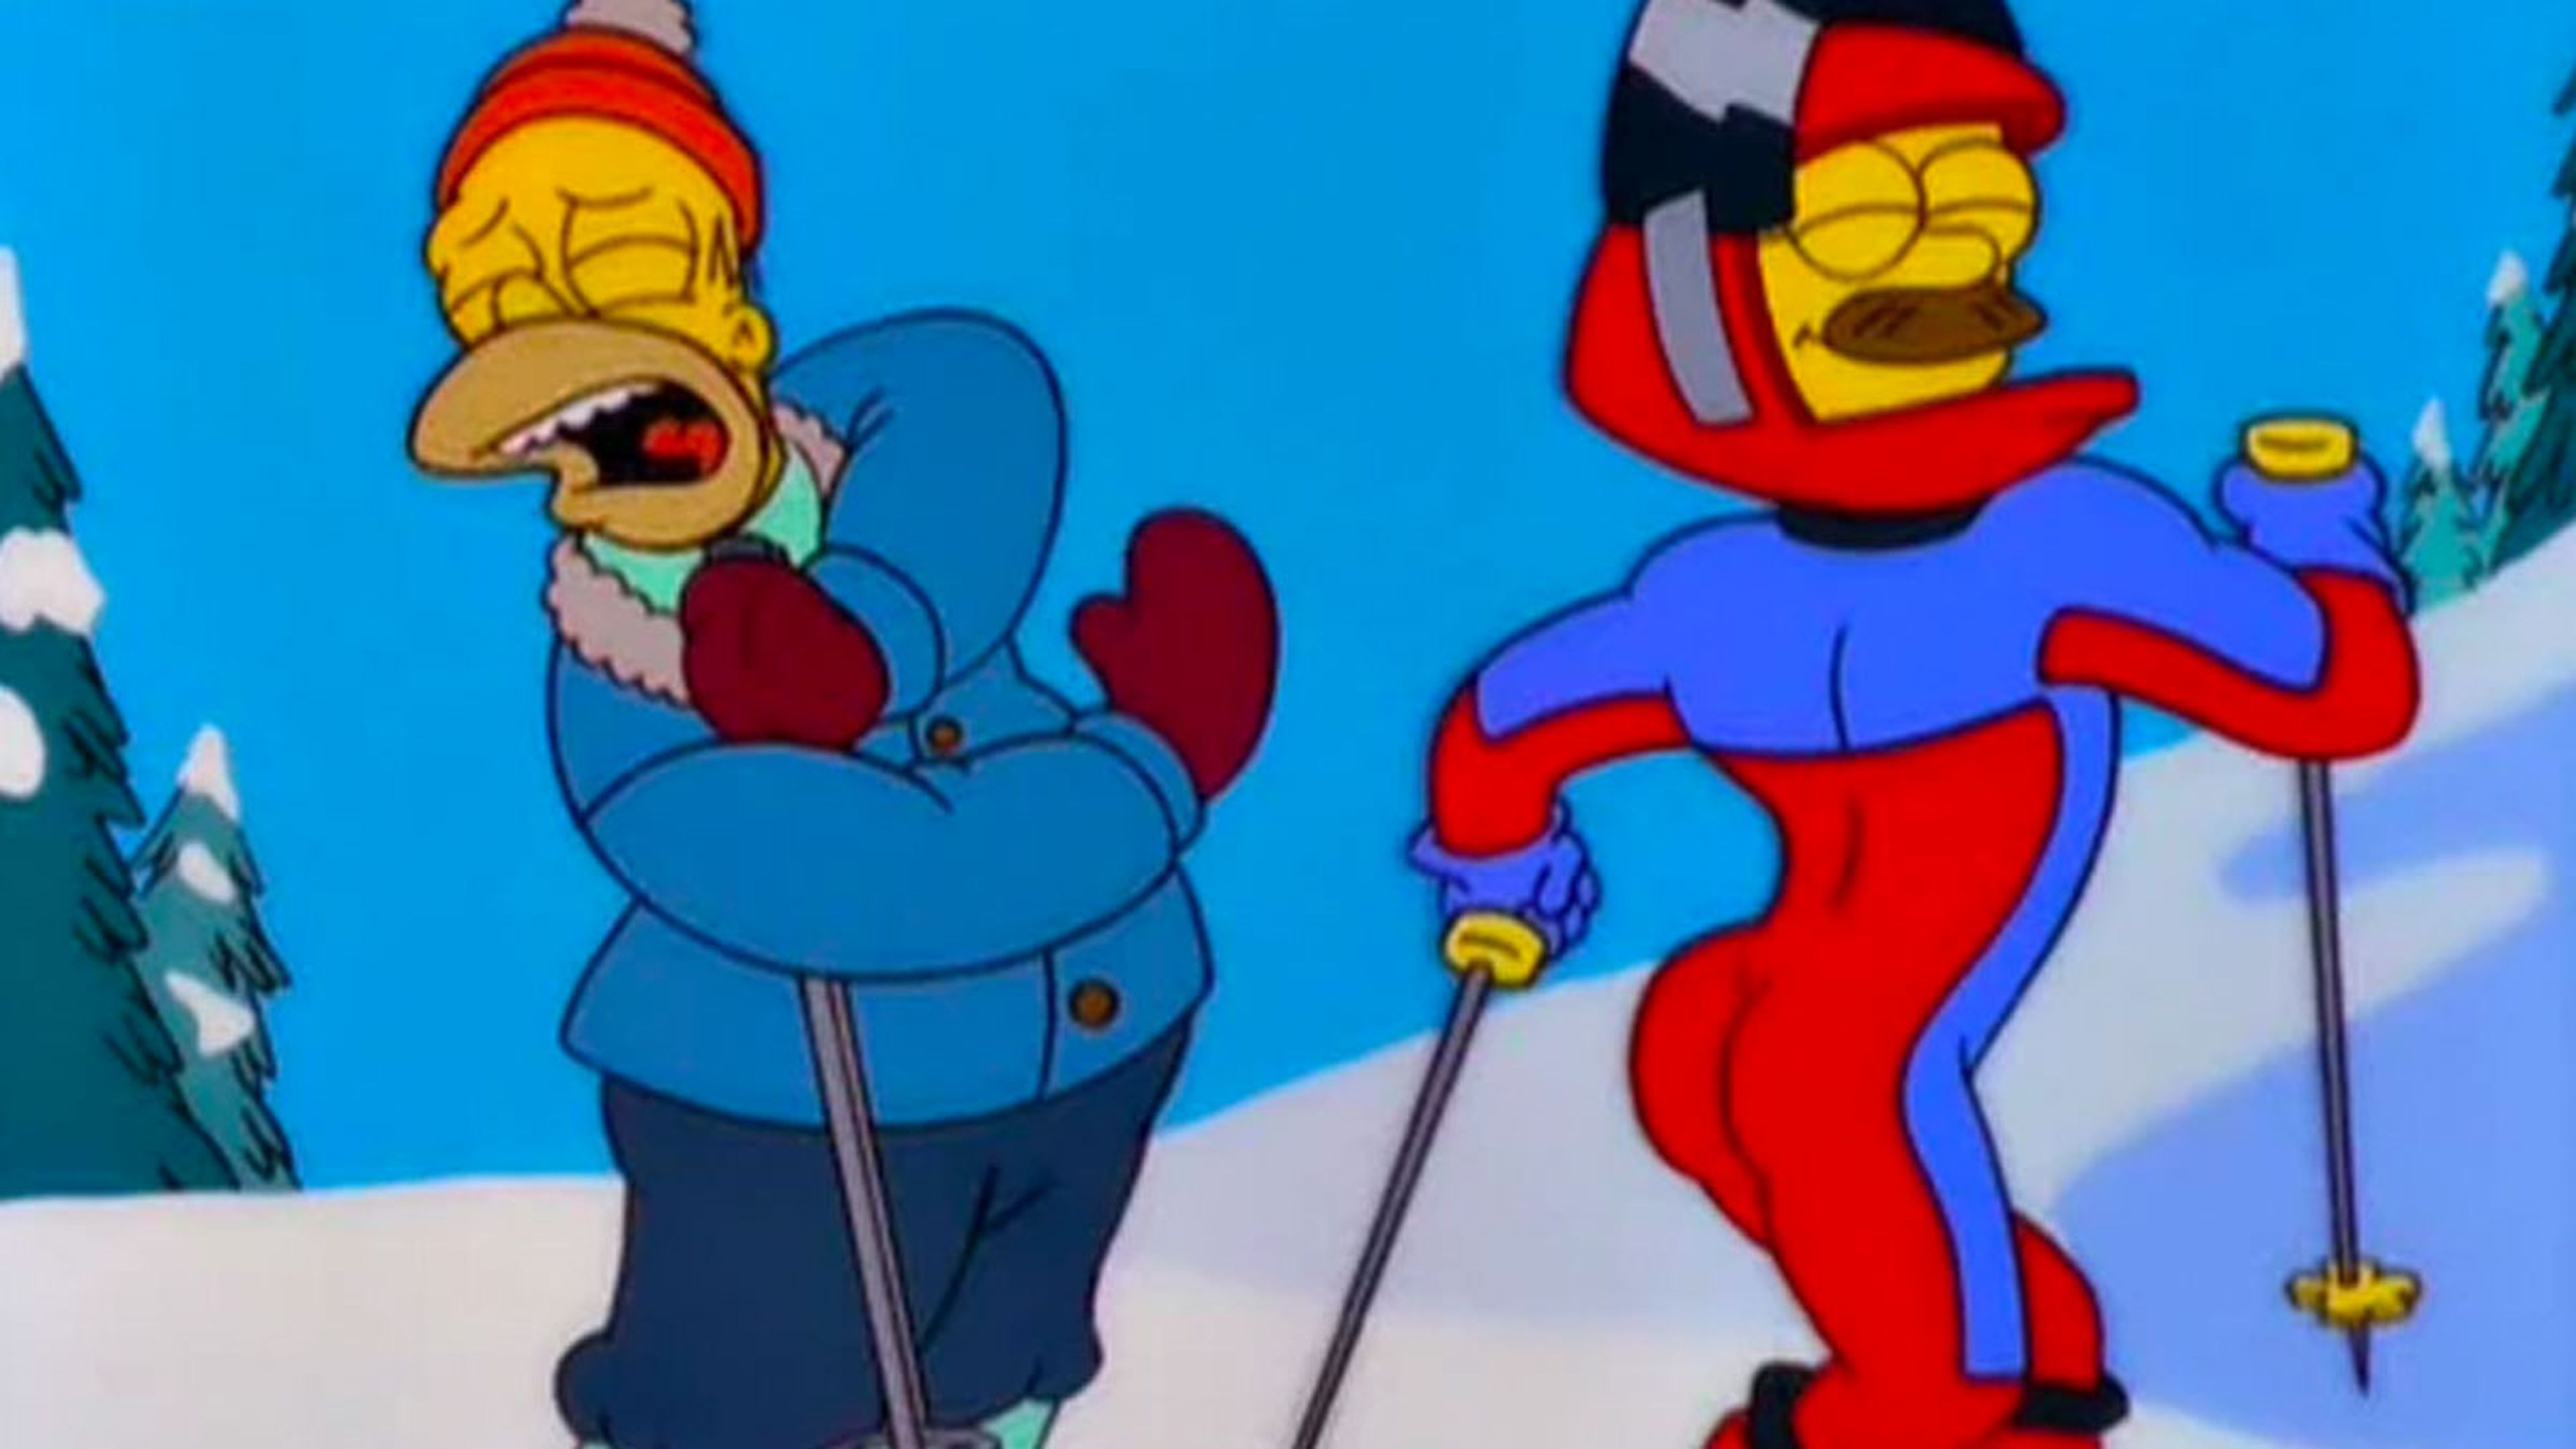 Los Simpson - Ned Flanders - Como si no llevara nada